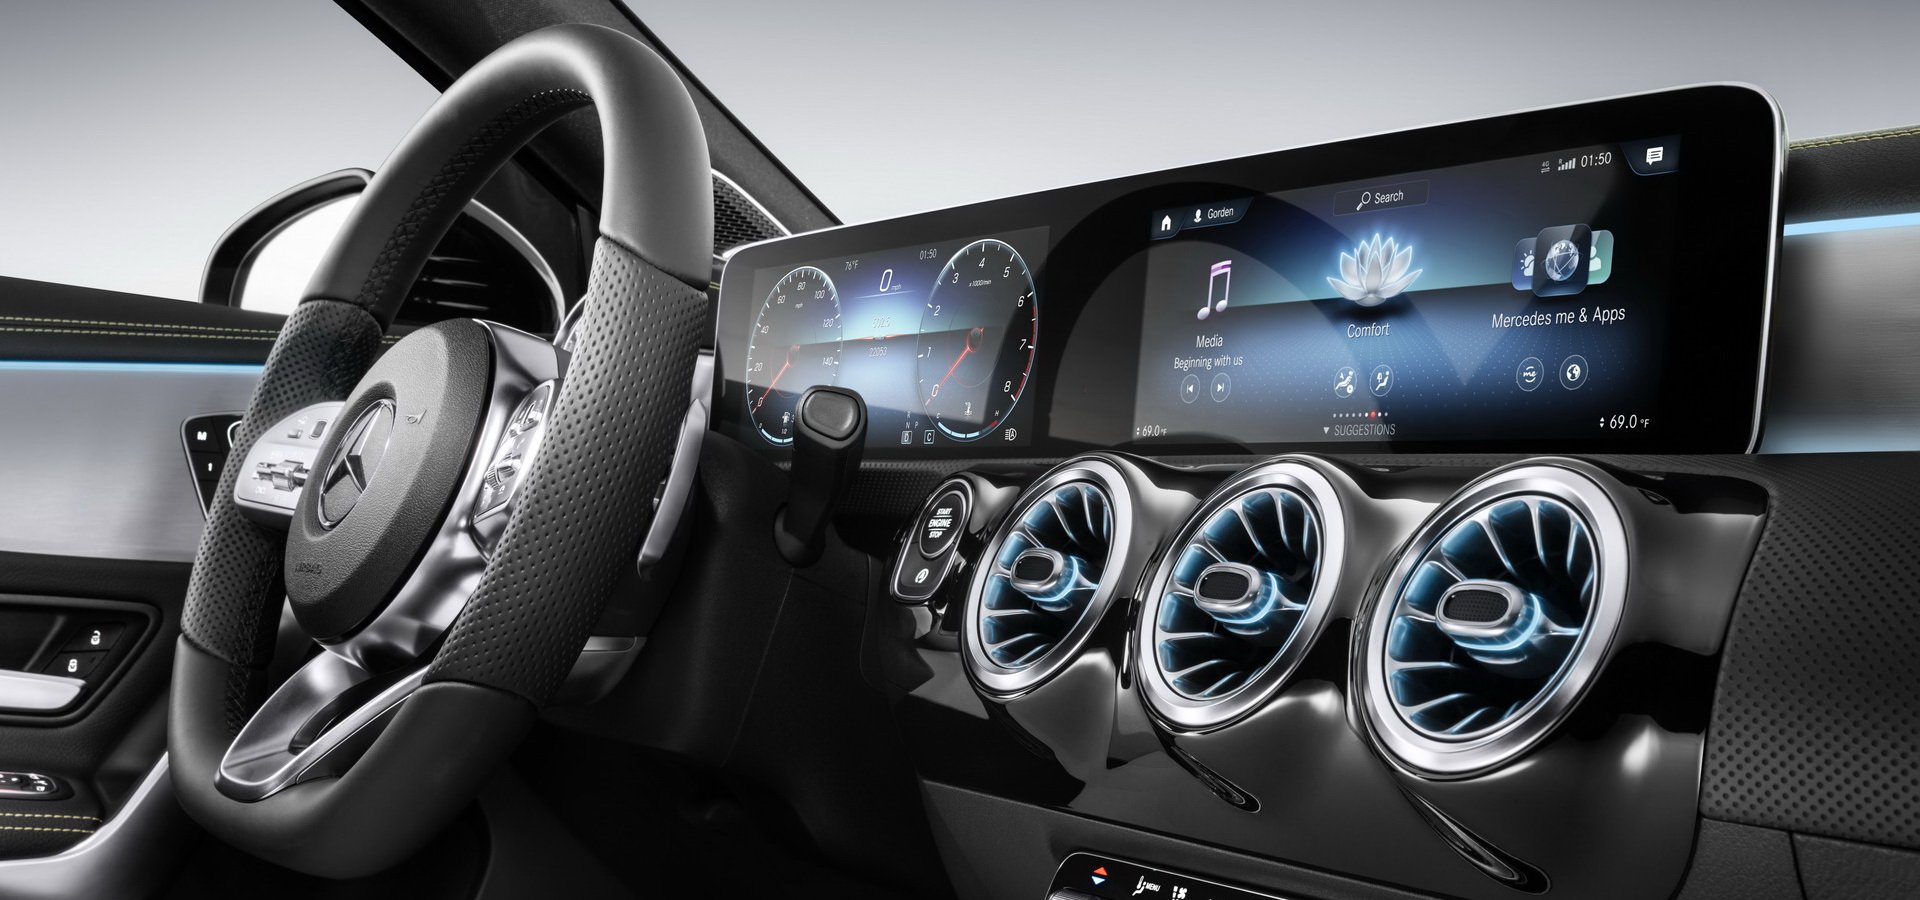 Mercedes-Benz giới thiệu 10 công nghệ hàng đầu trong năm 2019 - 1